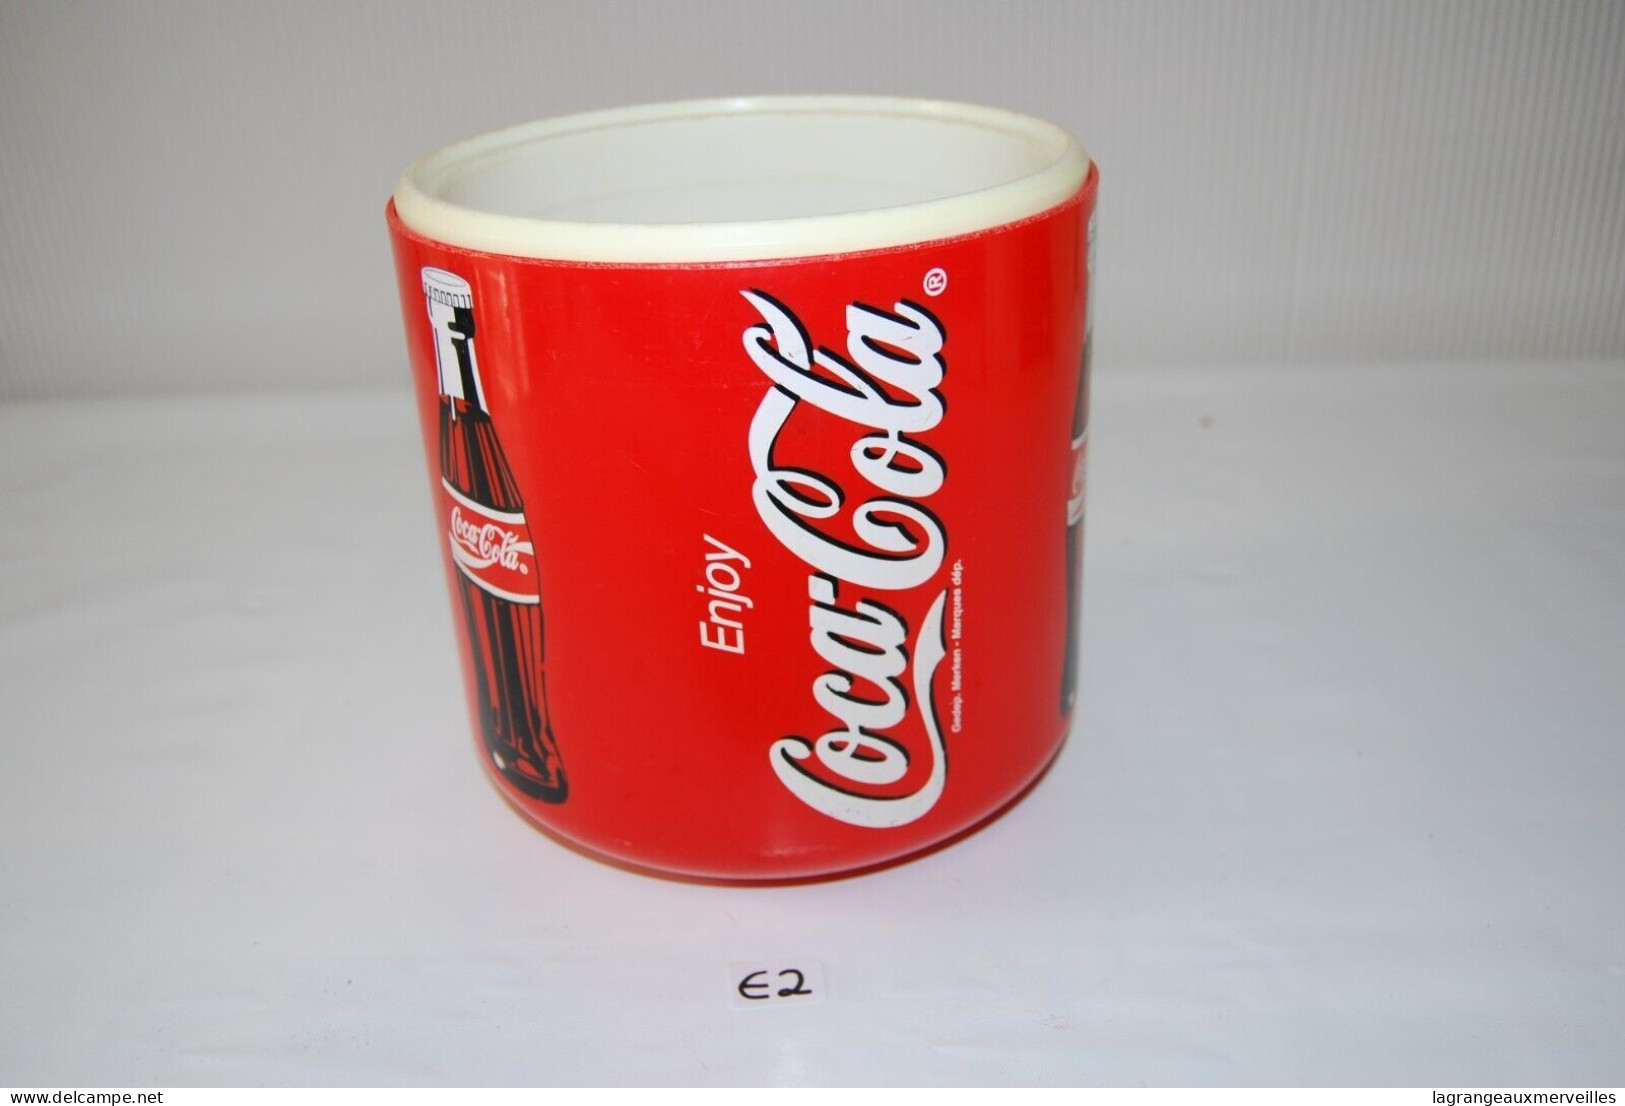 E2 Authentique ancienne glacière - Coca Cola - seau à glace